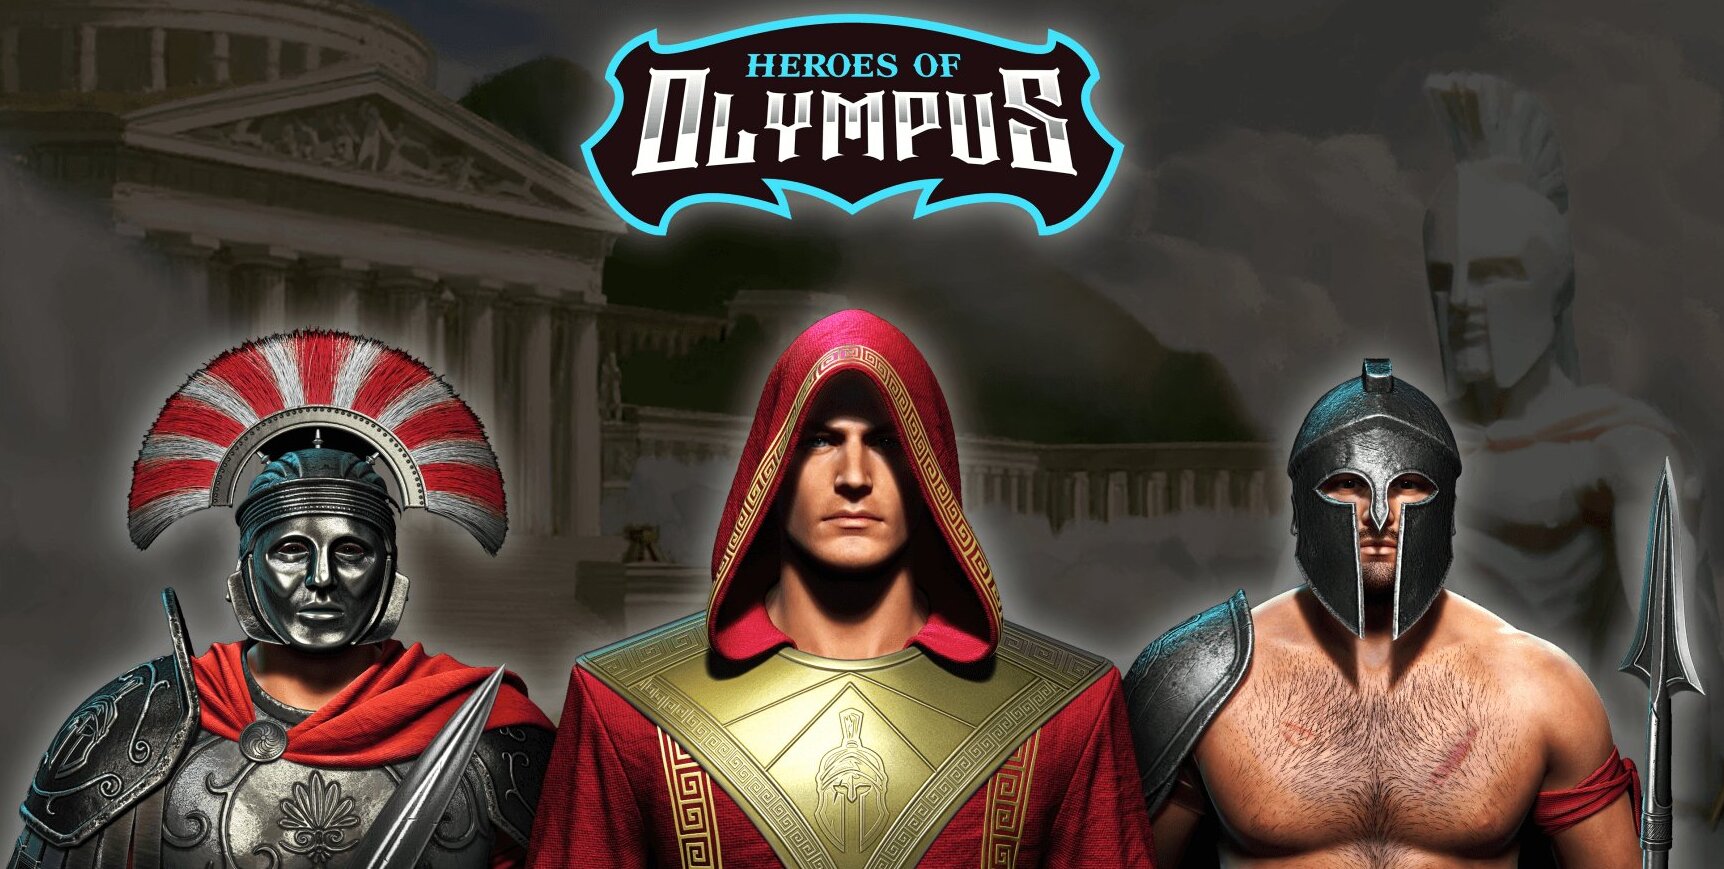 Heroes of Olympus